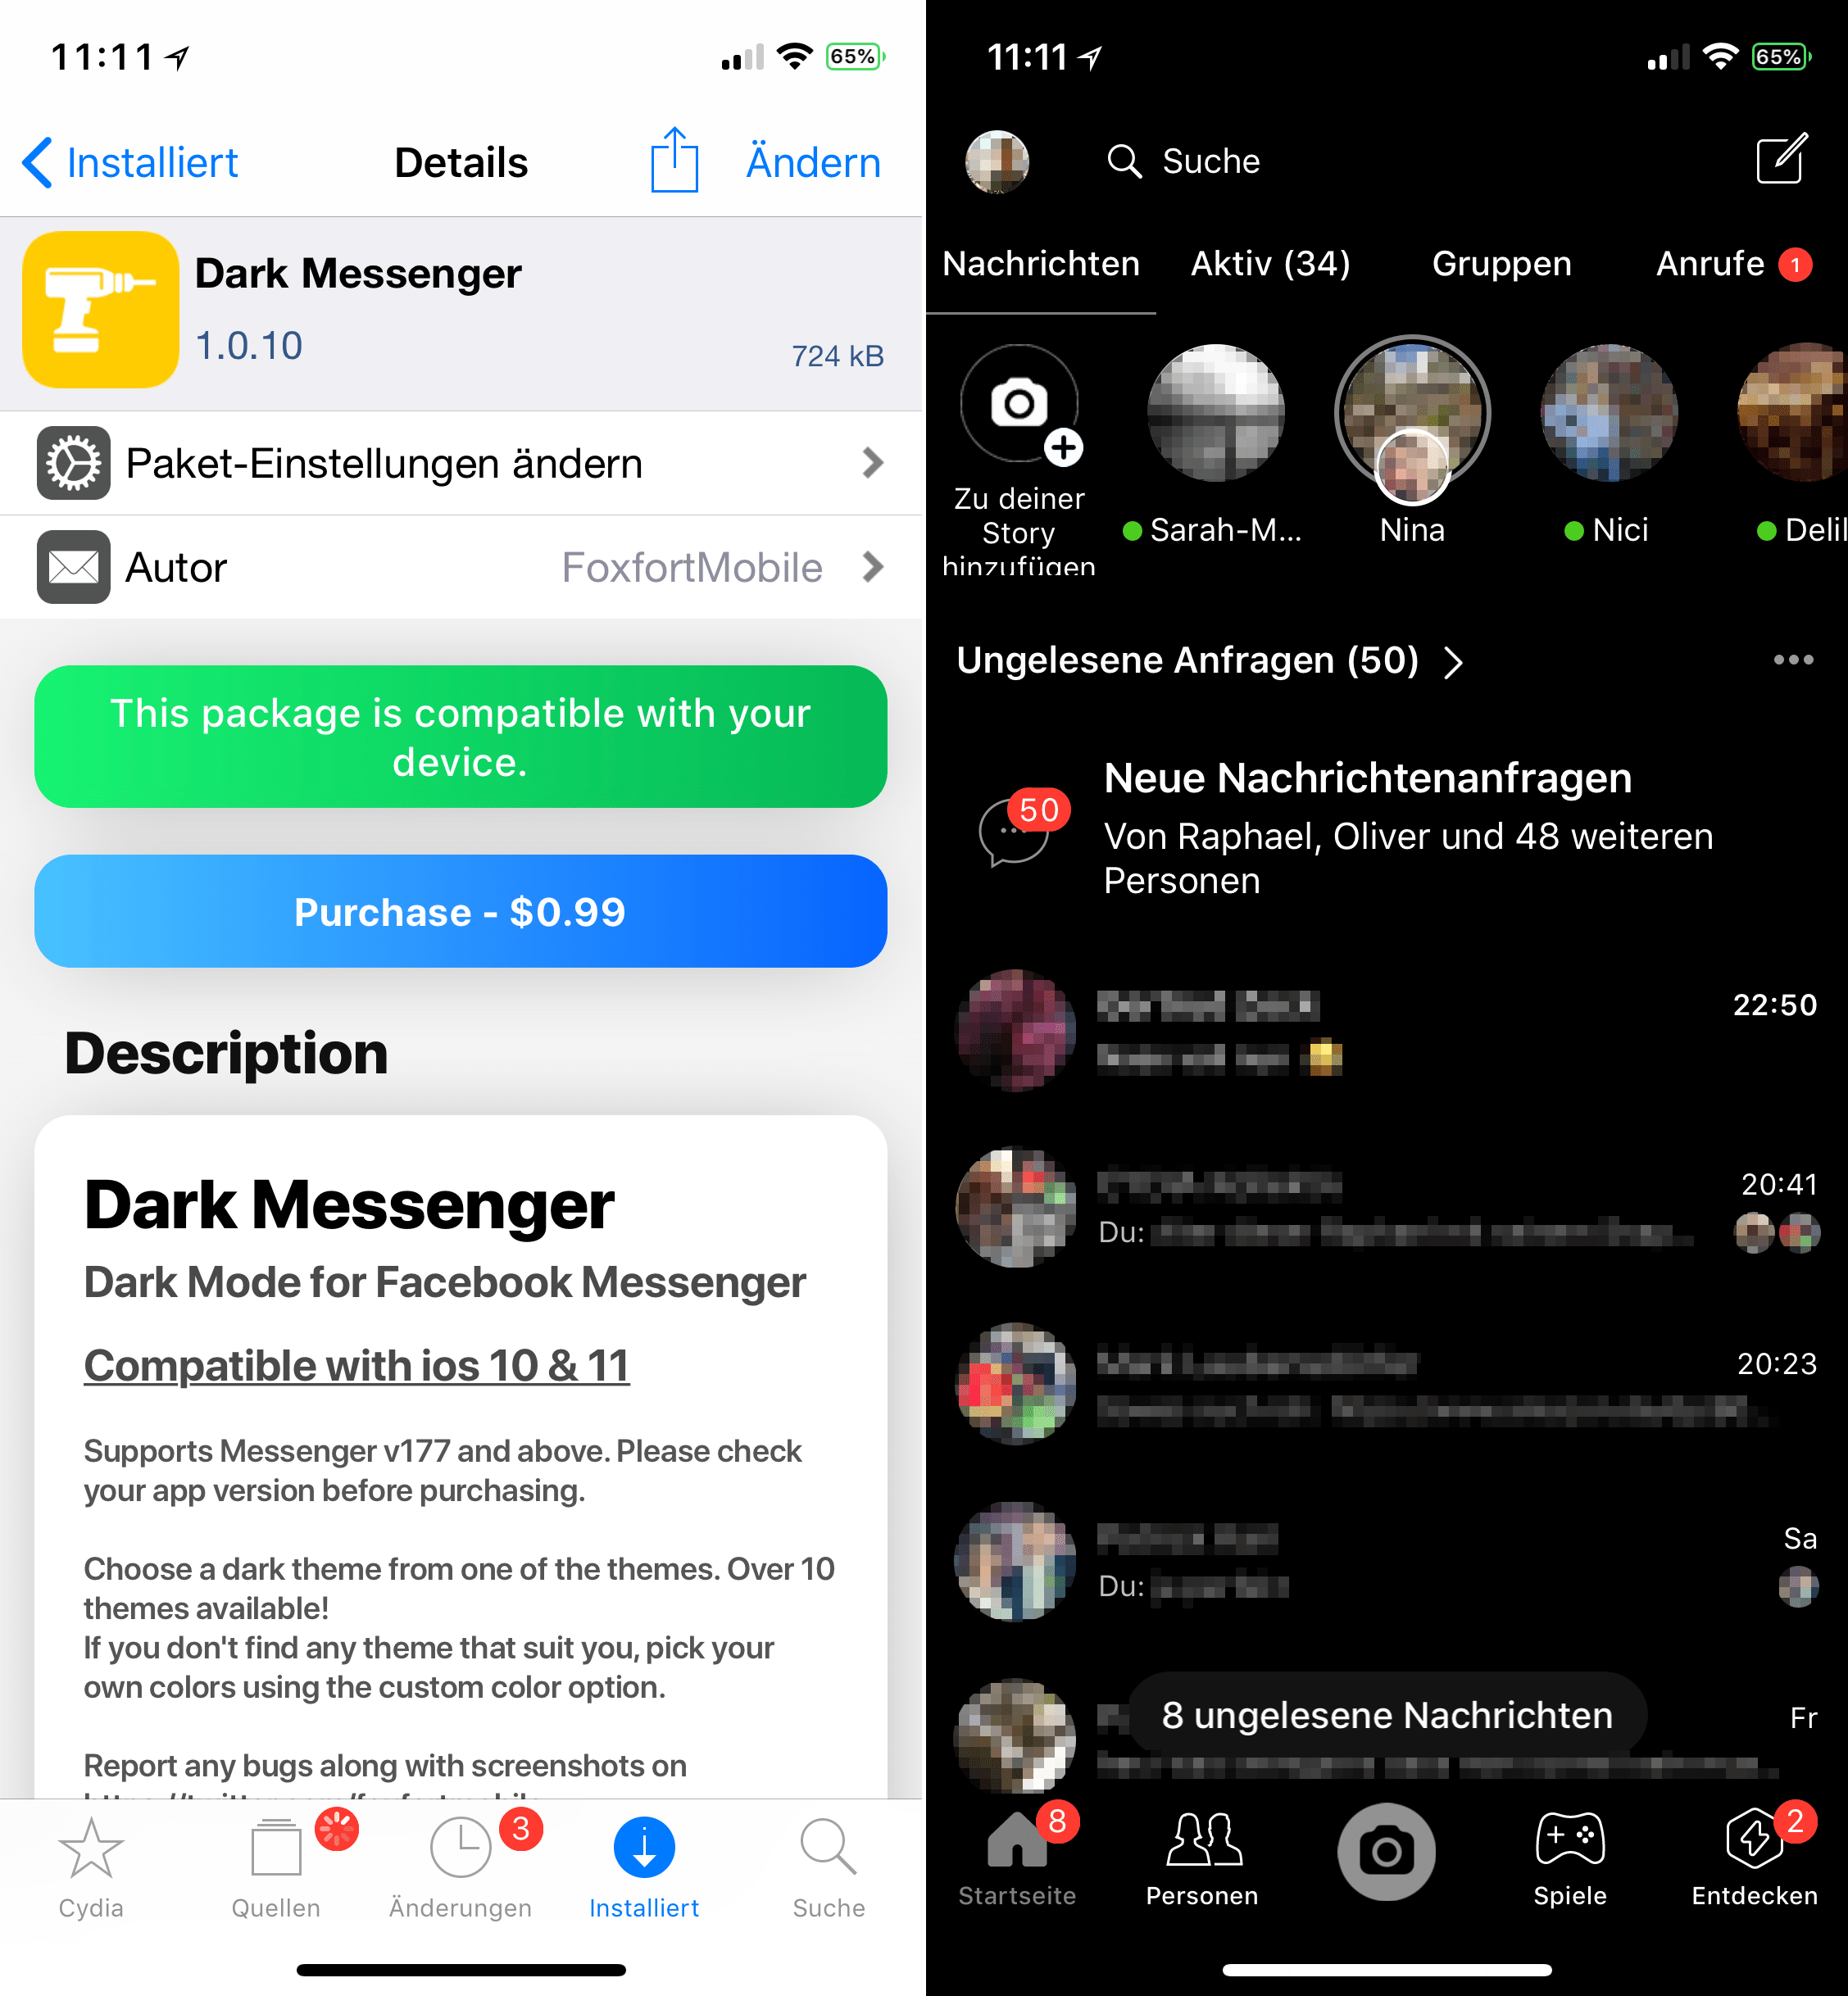 Facebook Messenger im Nachtmodus verwenden, Dark Messenger, Cydia, Sileo, Tweak, Download, free, kostenlos, gratis, hack, crack, easy, Darkmode, iOS 11, Hack4Life, Fabian Geissler